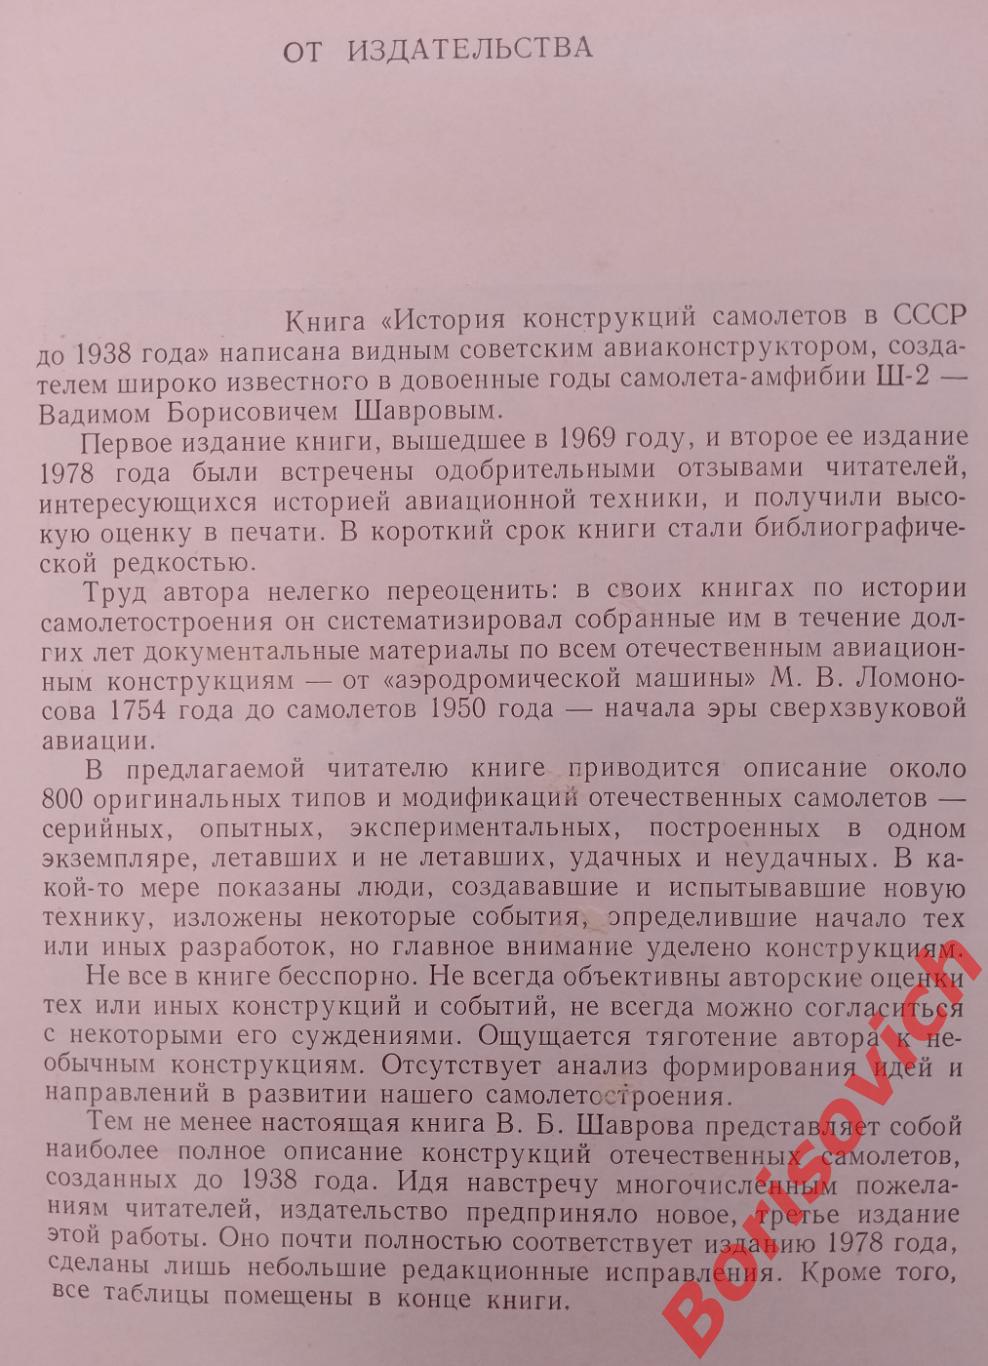 ИСТОРИЯ КОНСТРУКЦИЙ САМОЛЁТОВ В СССР до 1938 г. 1985 г 752 страницы 2